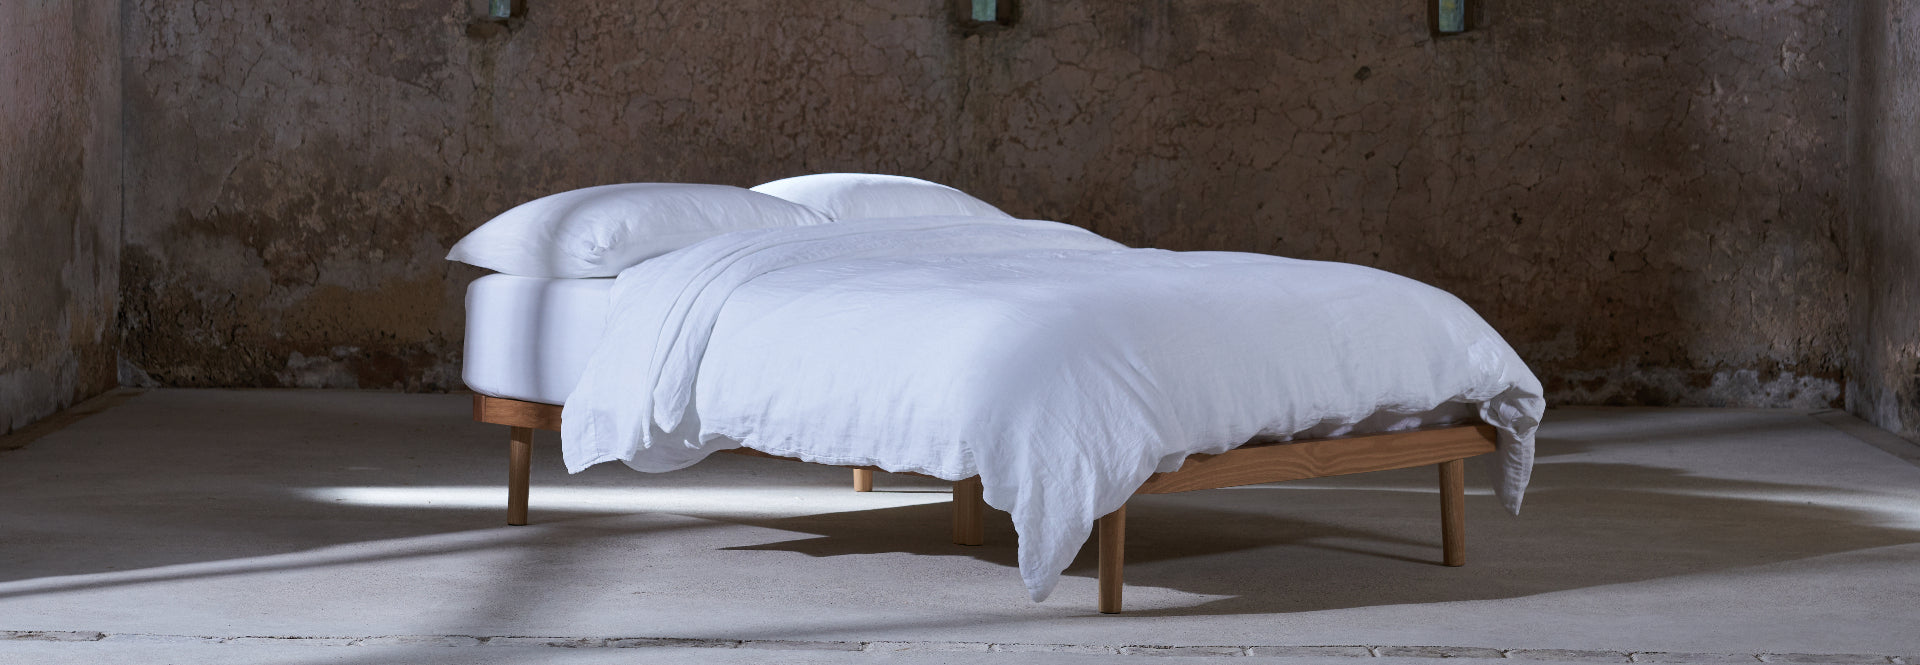 Linen Bedding | Linen Fabric Bedding | Flax Linen Sheets | Linen Bedding by Linen Cupboard Yorkshire